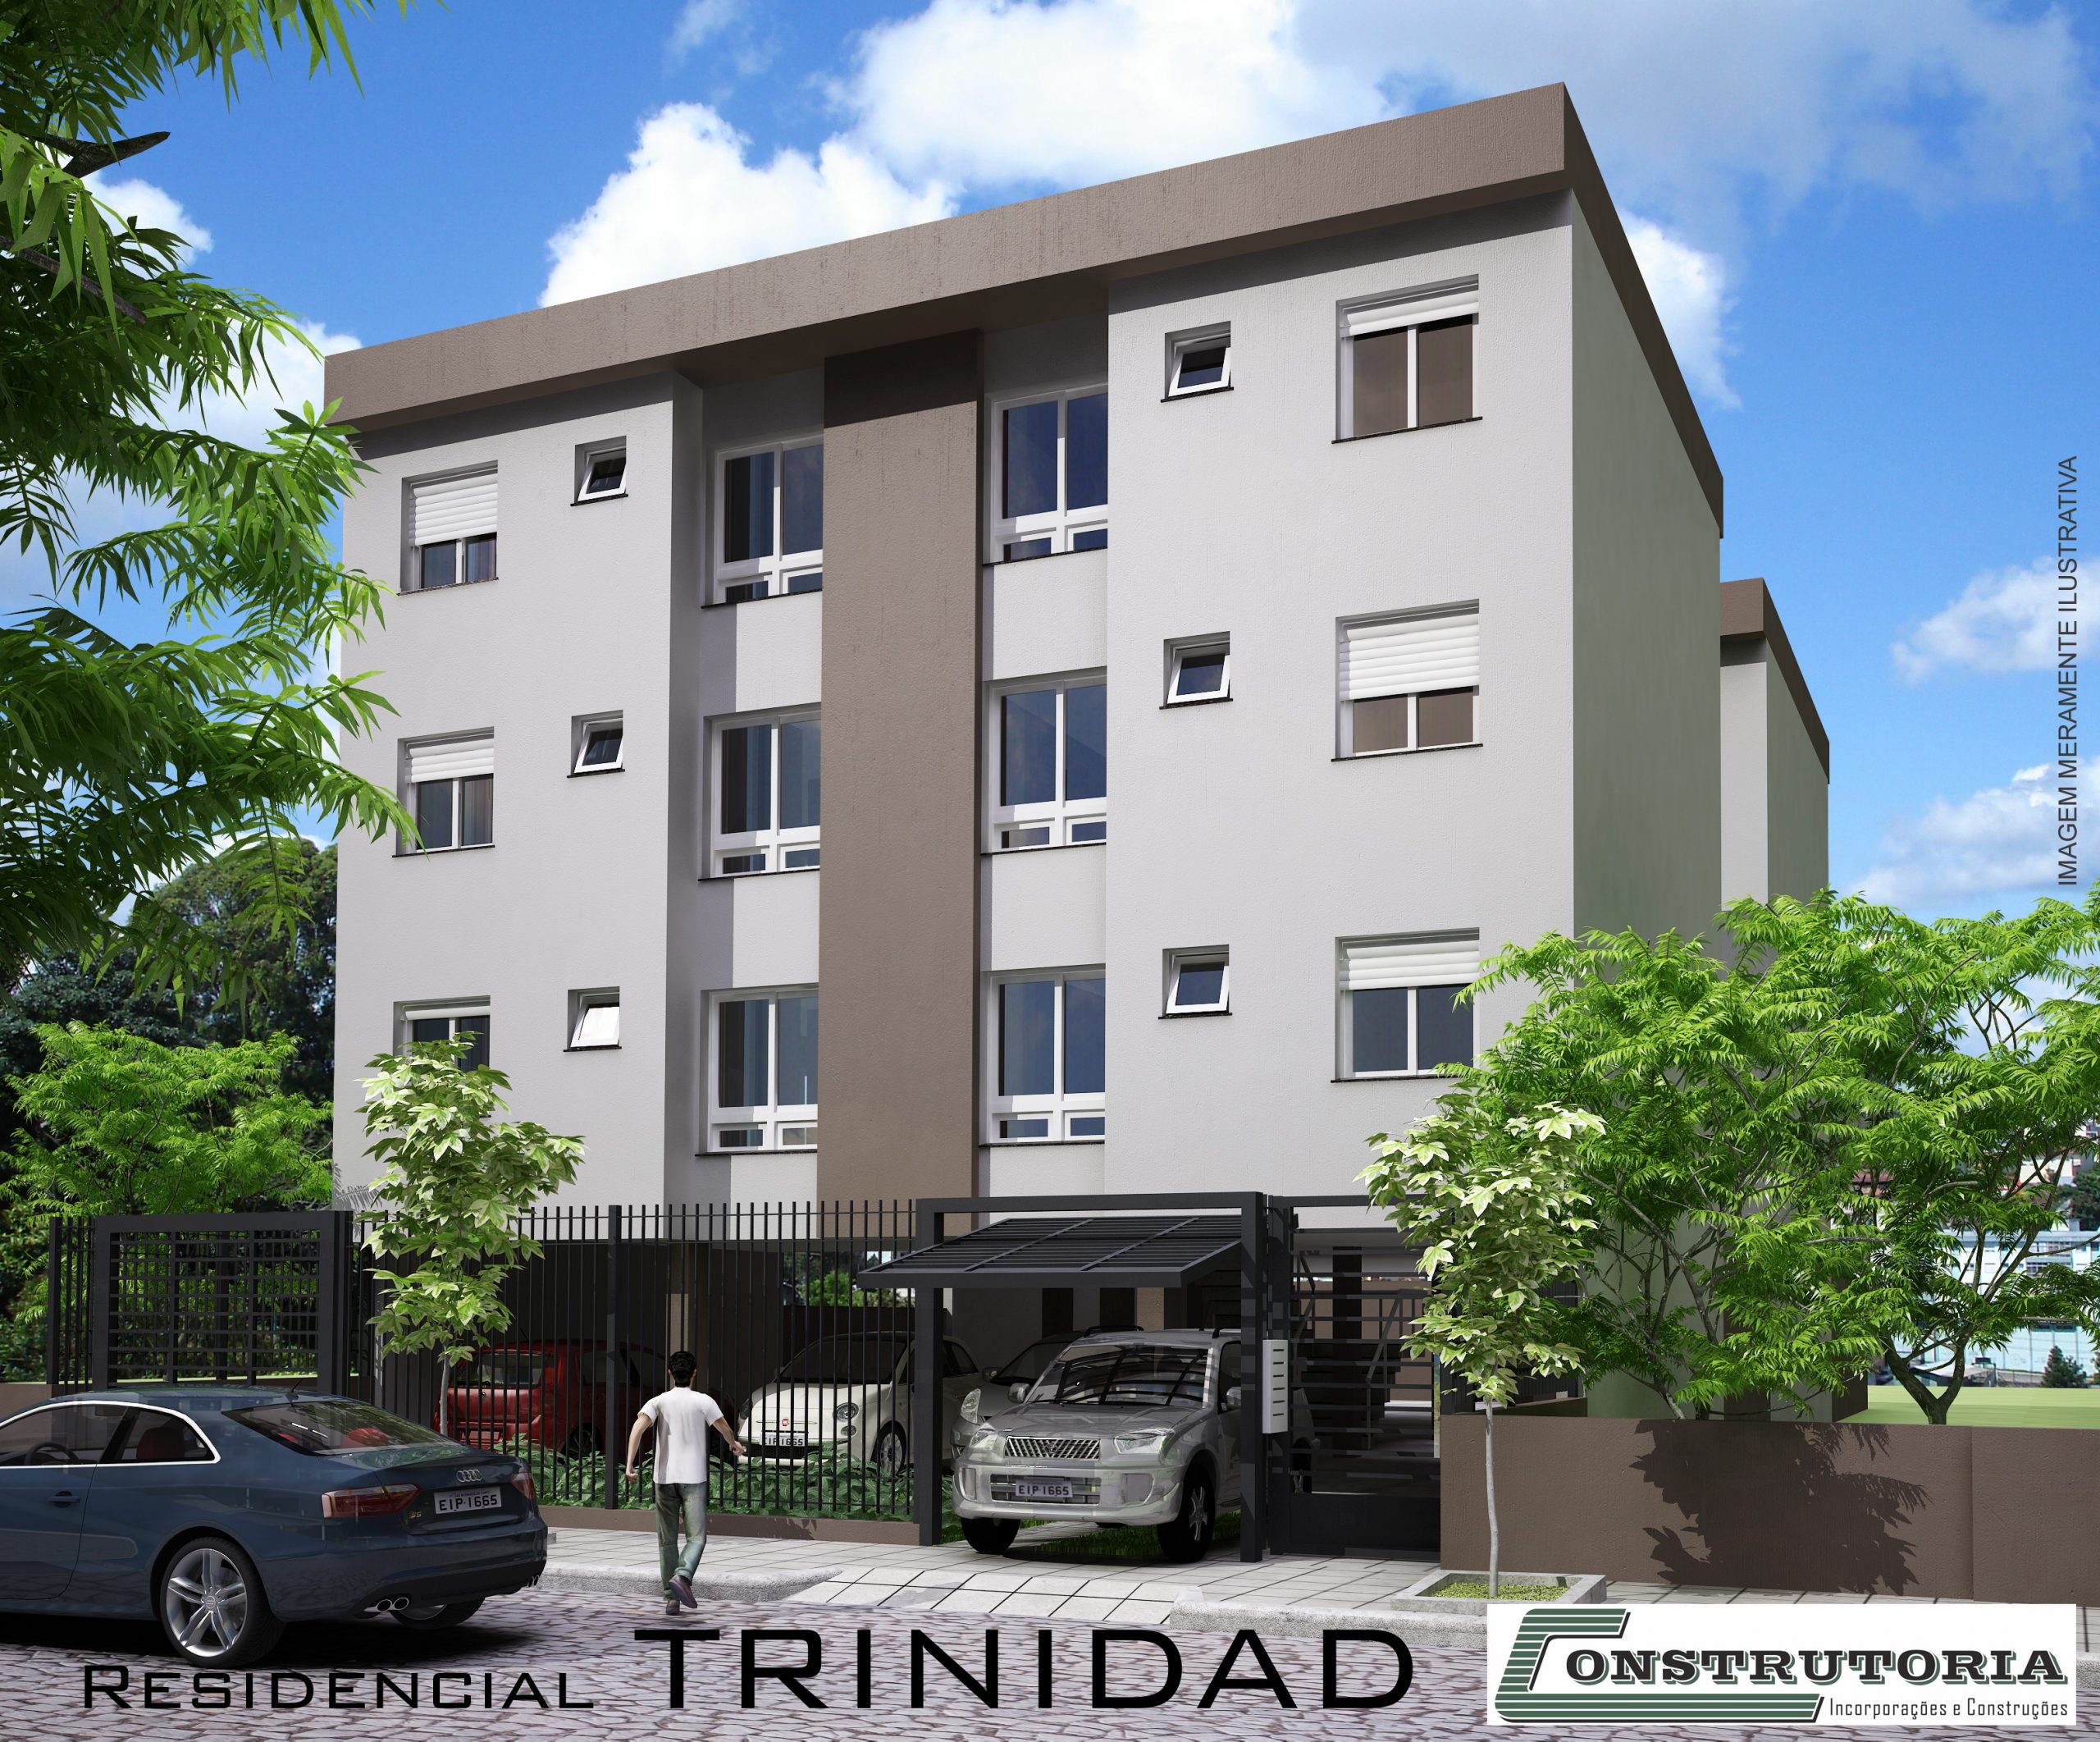 Residencial Trinidad